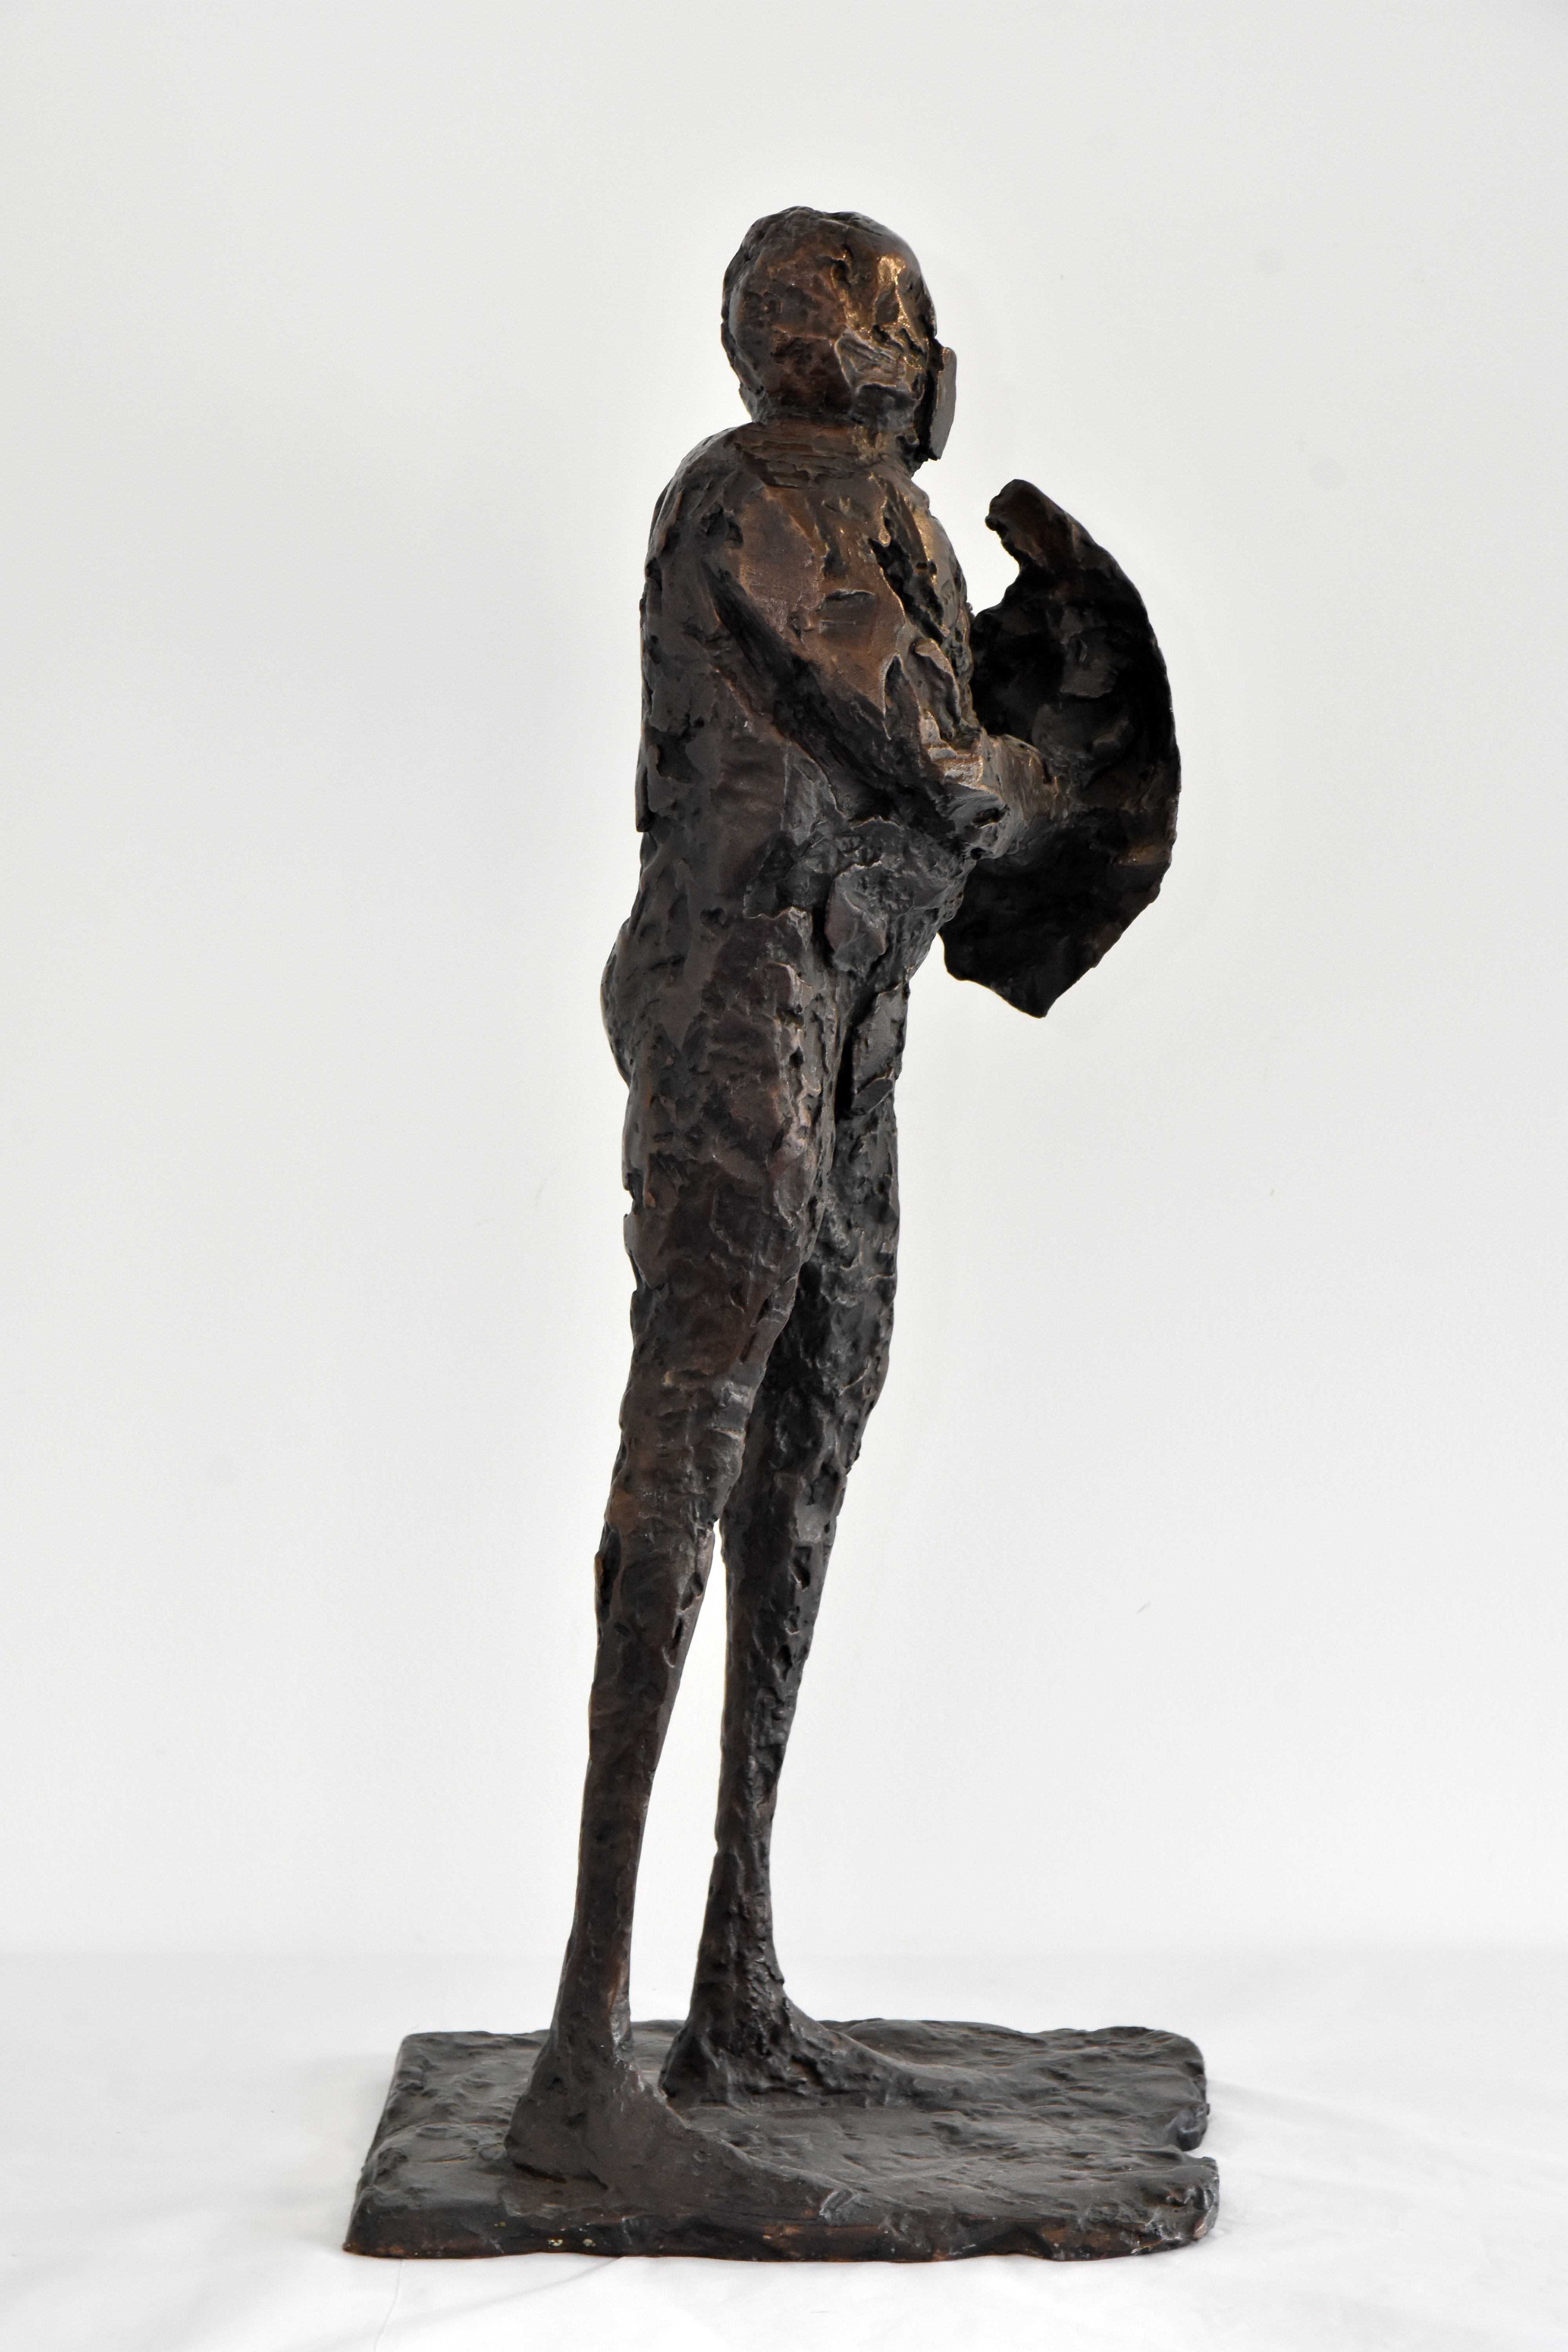 A bronze sculpture of a standing man, holding a shield.